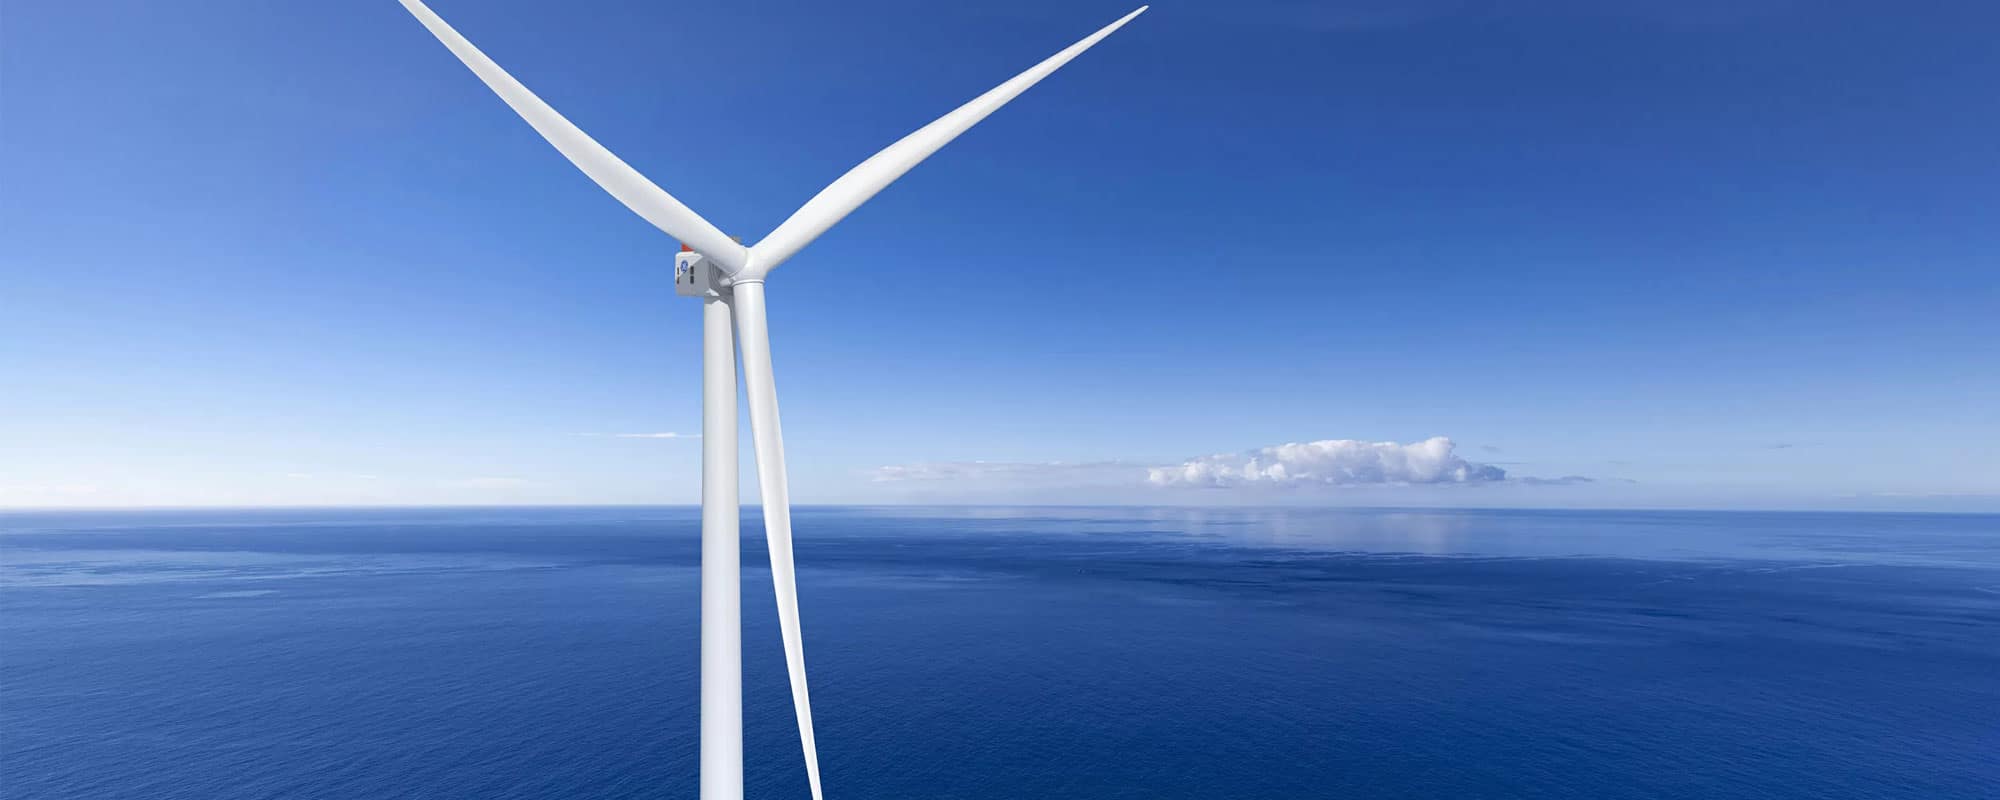 Un rodamiento digno de la turbina eólica más potente del mundo